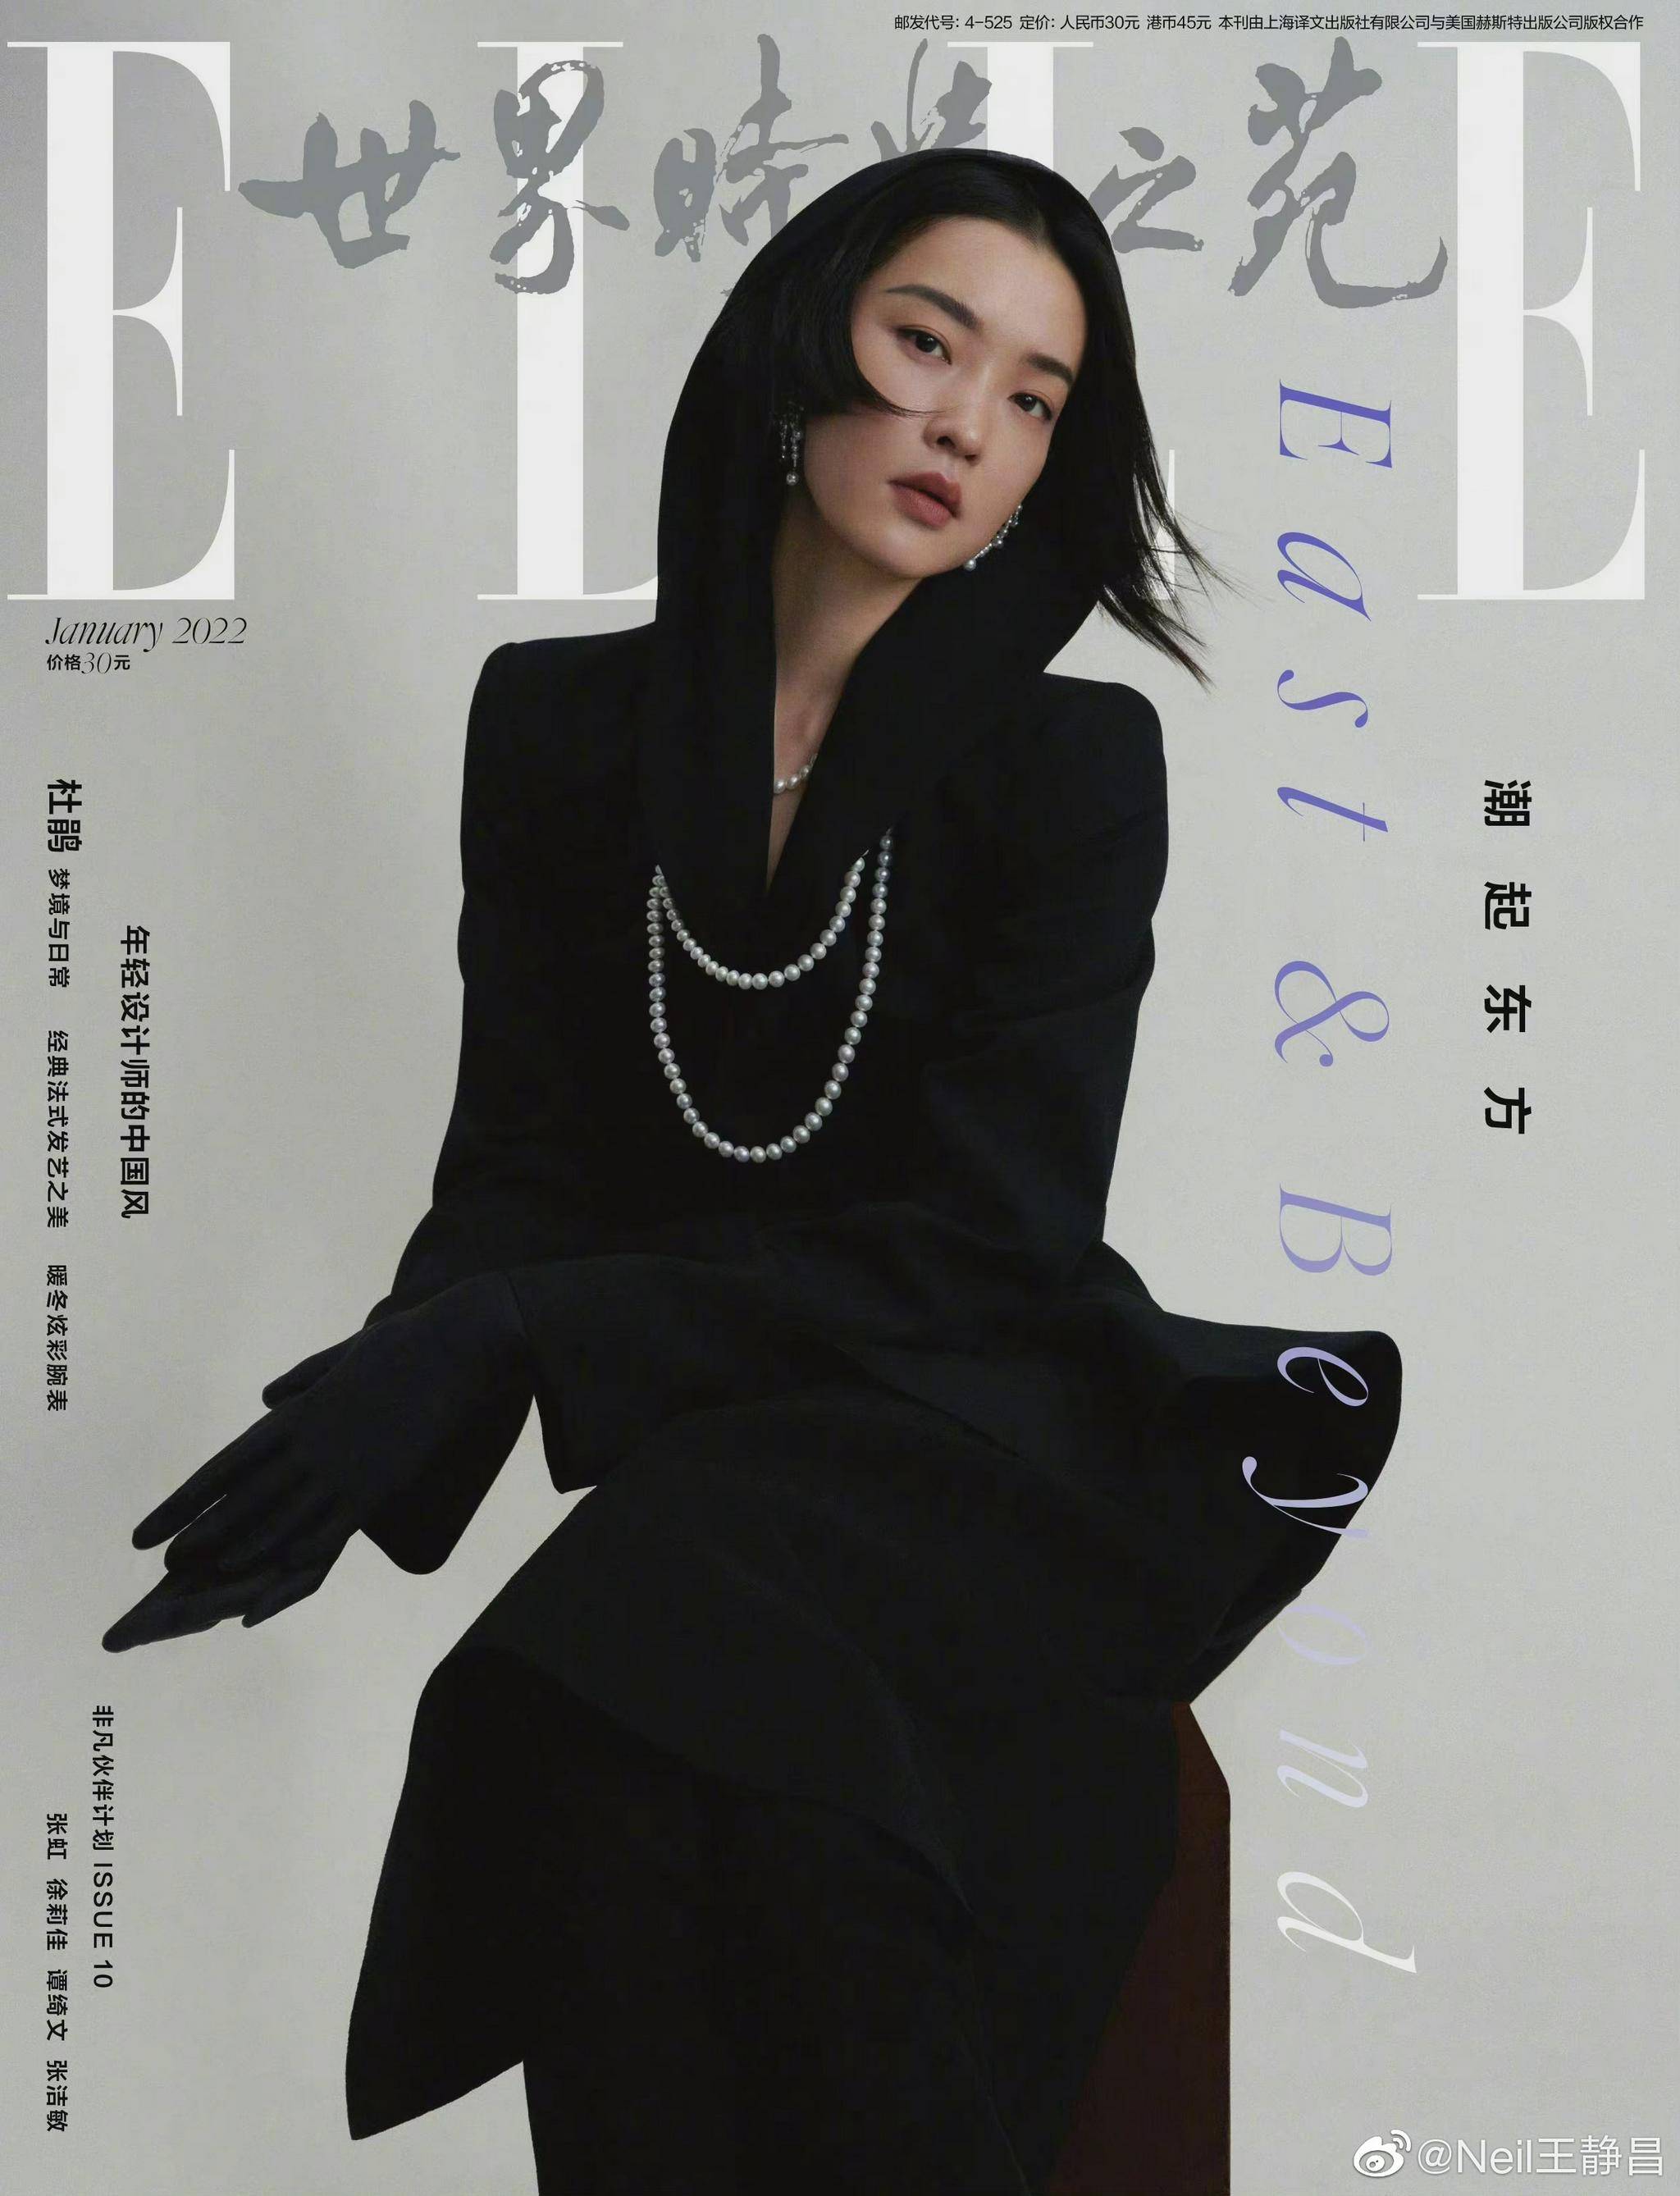 超模演员杜鹃登上elle2022年1月刊封面